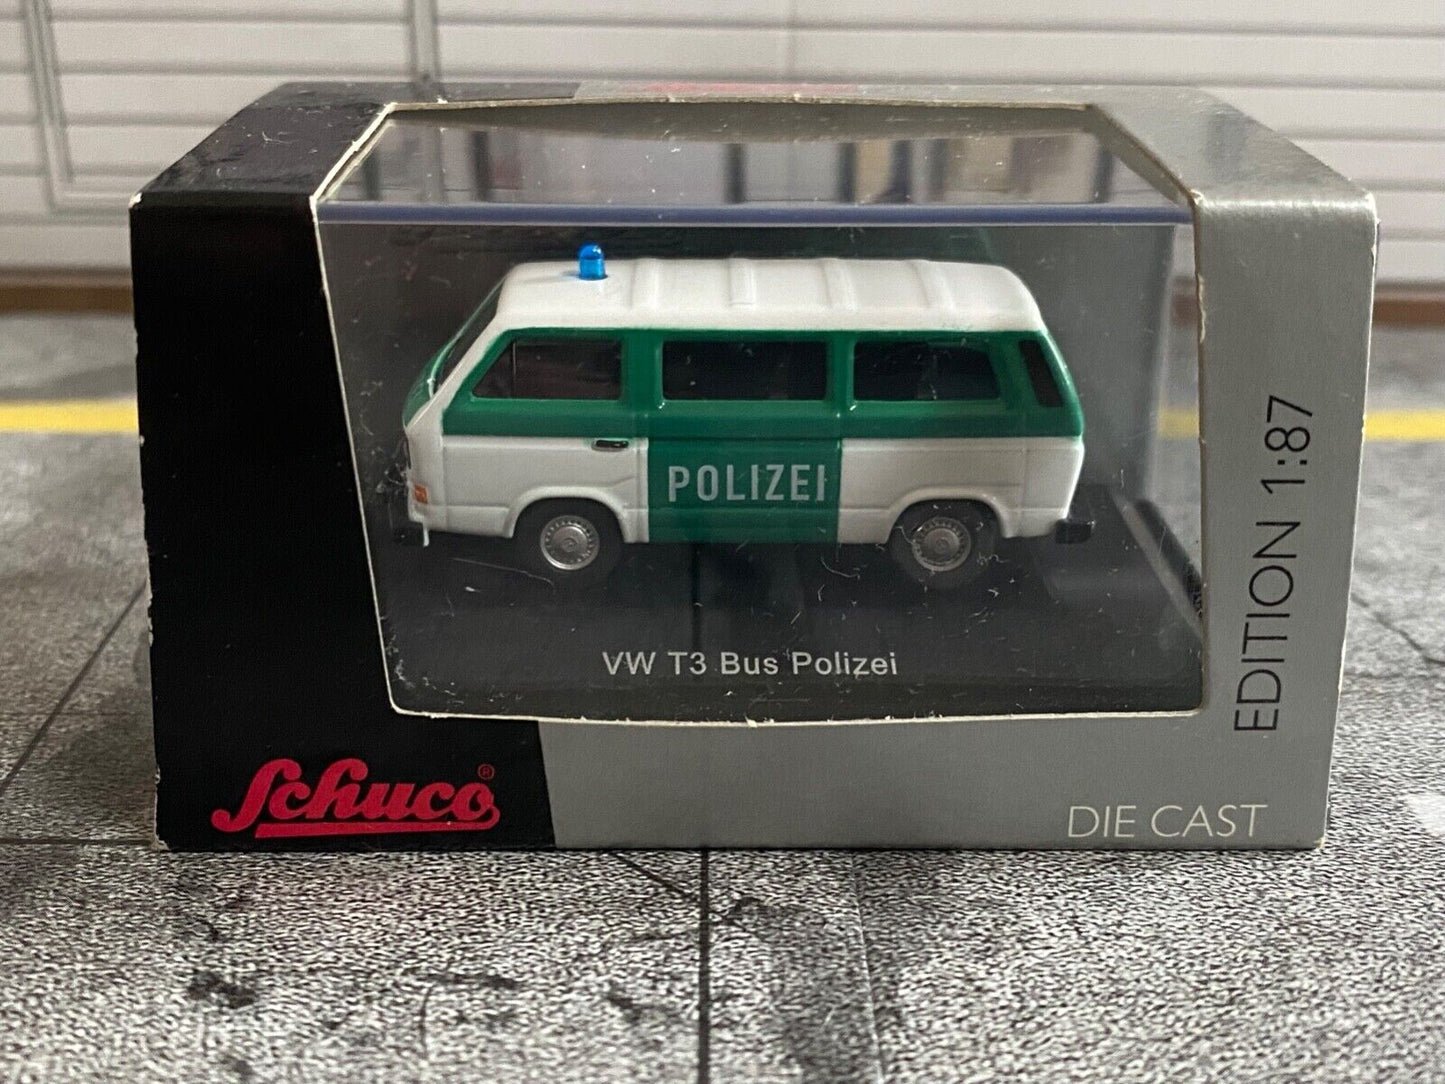 VW Bus T3 Polizei Berlin Schuco 45256110 "Variante B-30088" Neu in OVP 1:87